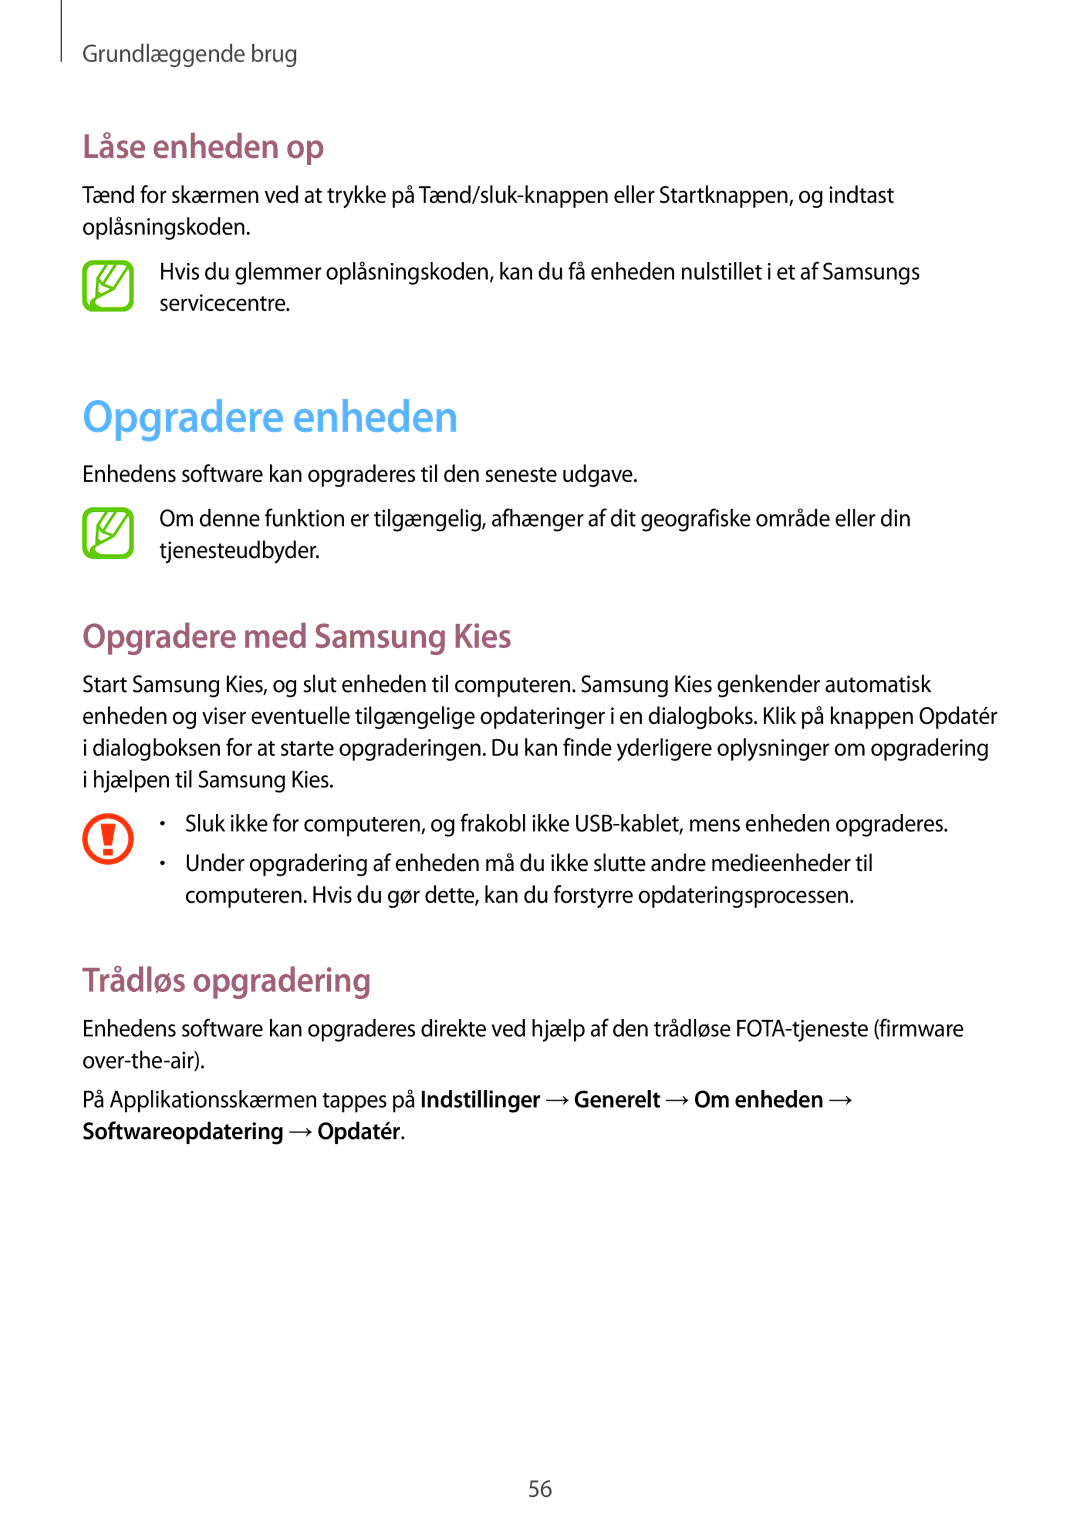 Samsung SM-N7505ZWANEE, SM-N7505ZKANEE Opgradere enheden, Låse enheden op, Opgradere med Samsung Kies, Trådløs opgradering 